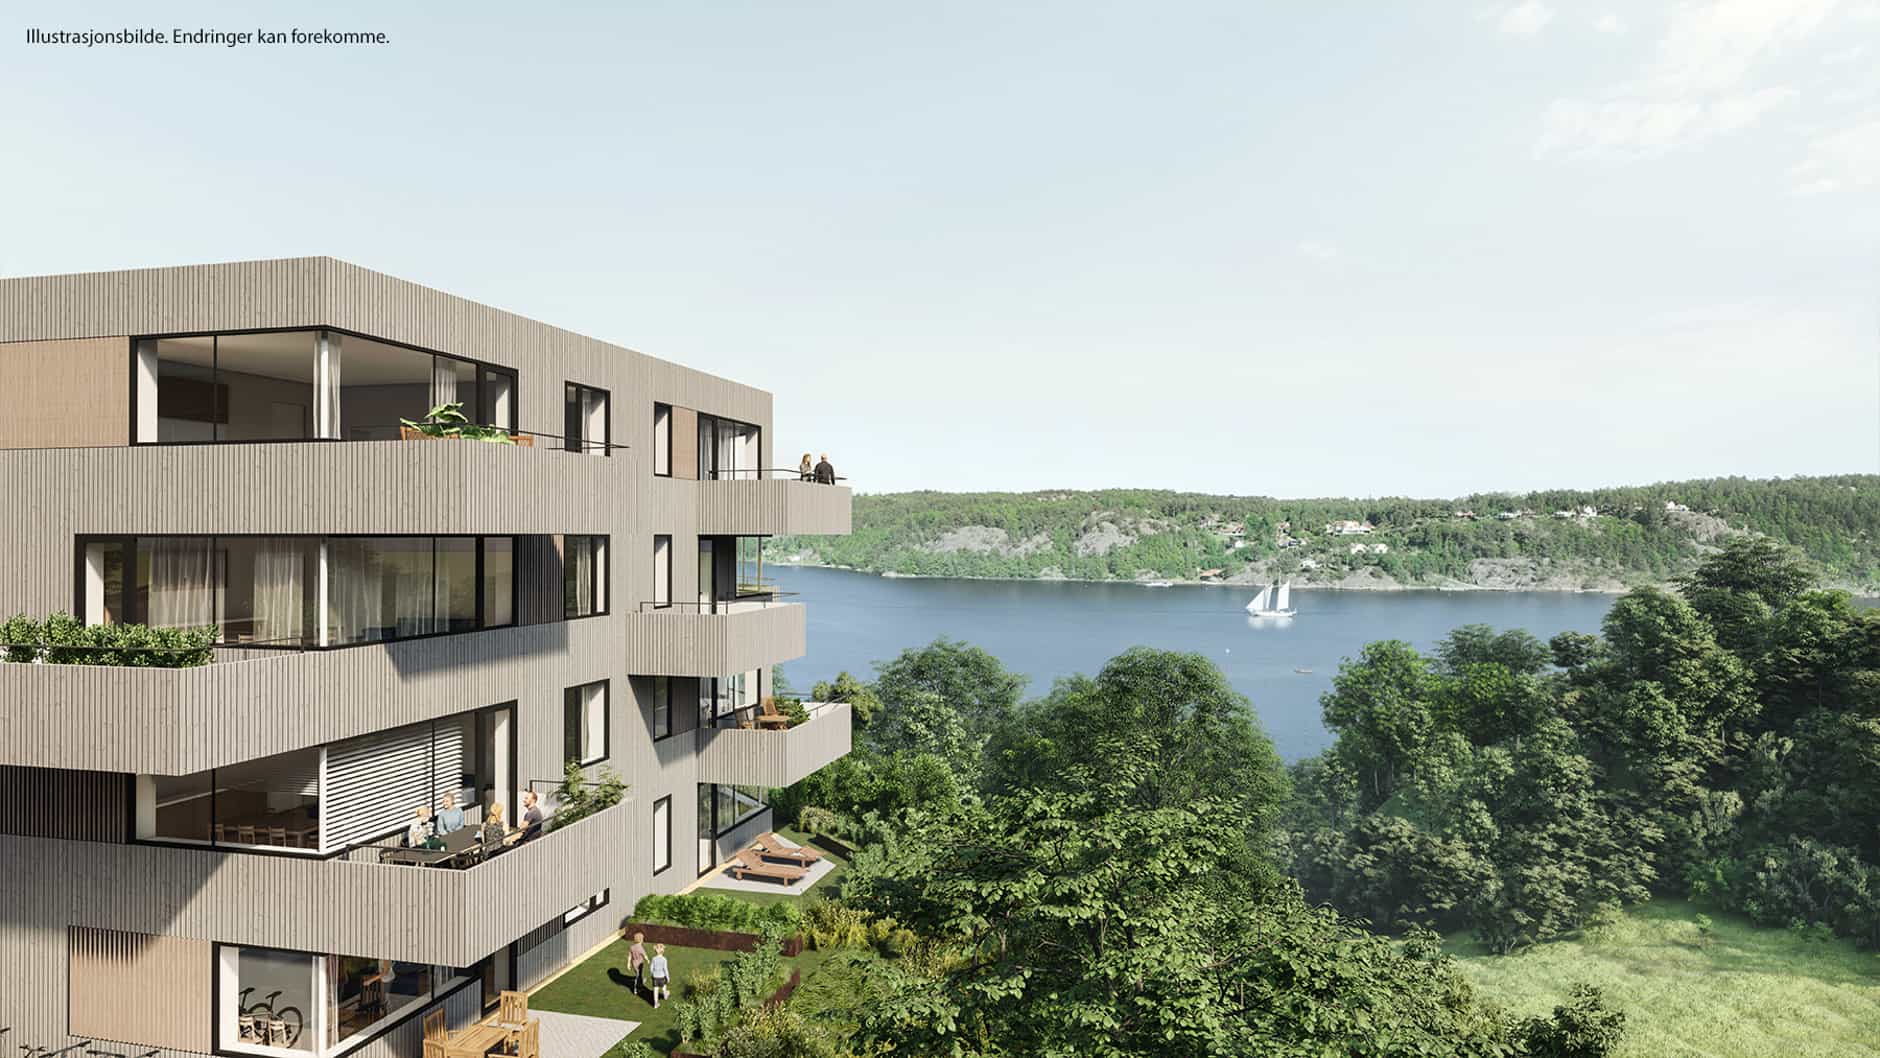 66 leiligheter sentralt <br> ved sjøen i Grimstad